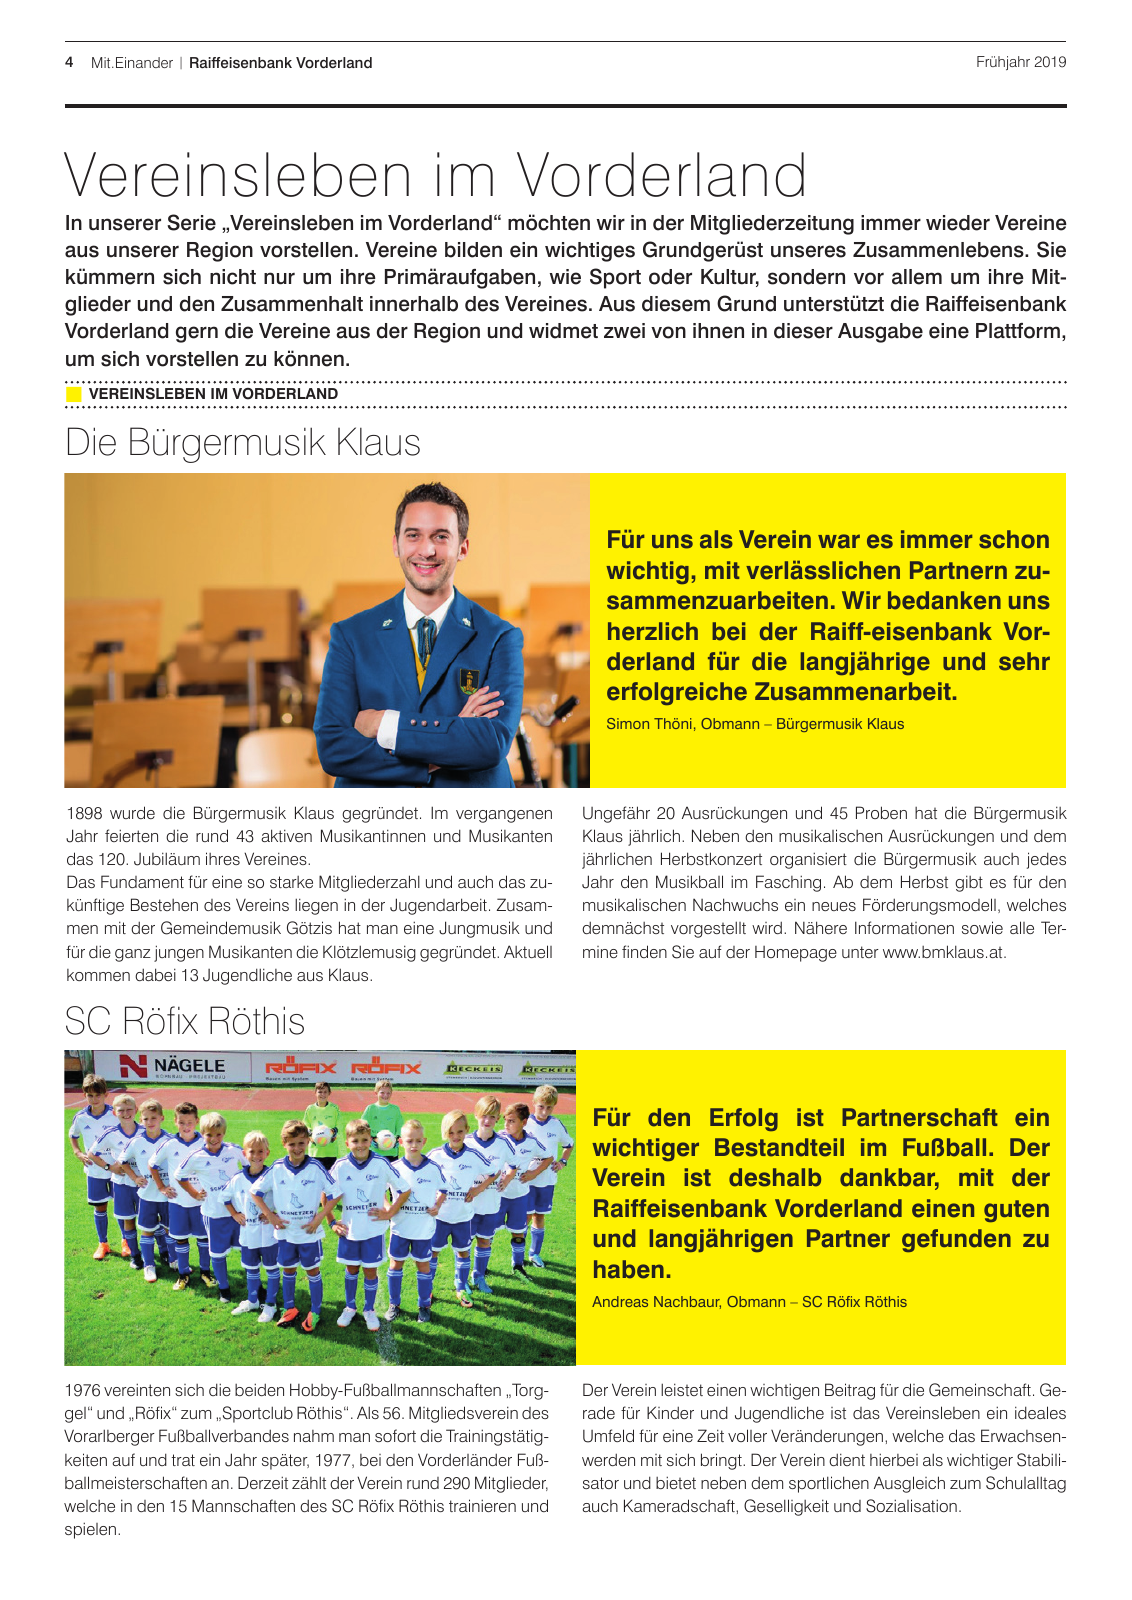 Vorschau Mitgliederzeitung RB Vorderland Frühjahr 2019 Seite 4